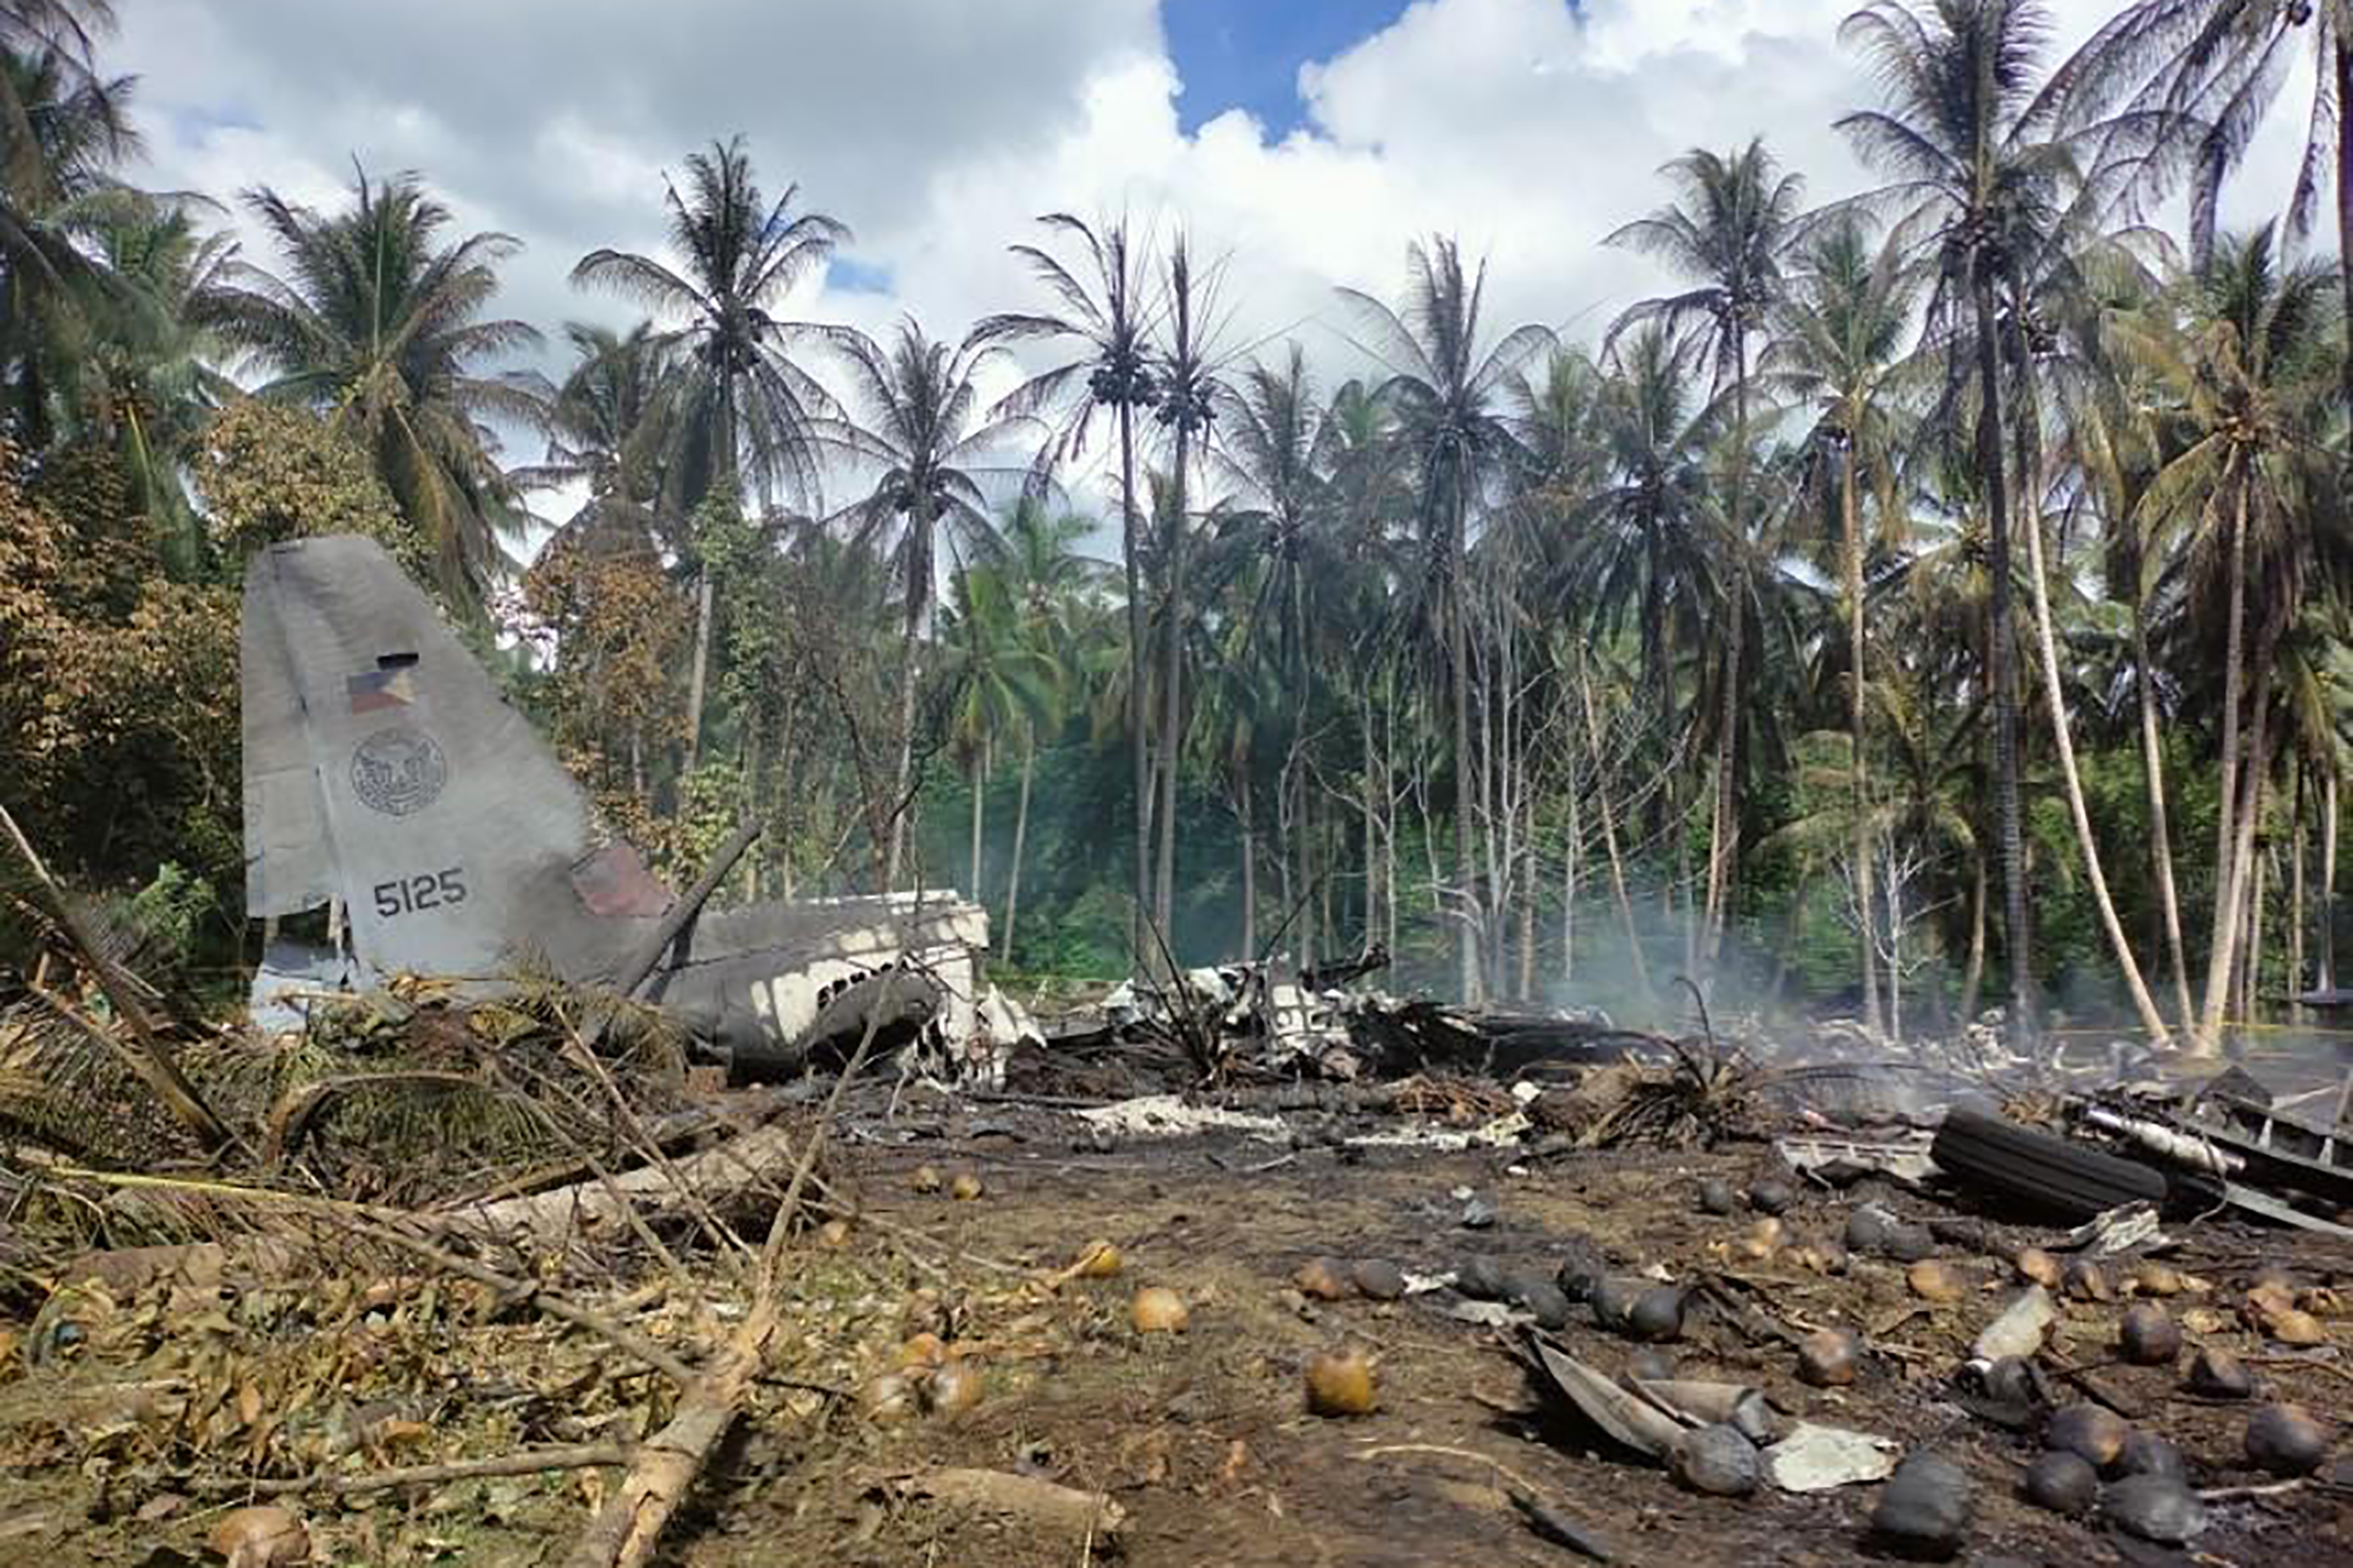 Место авиакатастрофы. Катастрофа c-130 филиппинских ВВС. Самолет 130 25 погибших. Авиакатастрофа на Филиппинах 5 июля 2021 года. Катастрофа 1987 Филиппины.